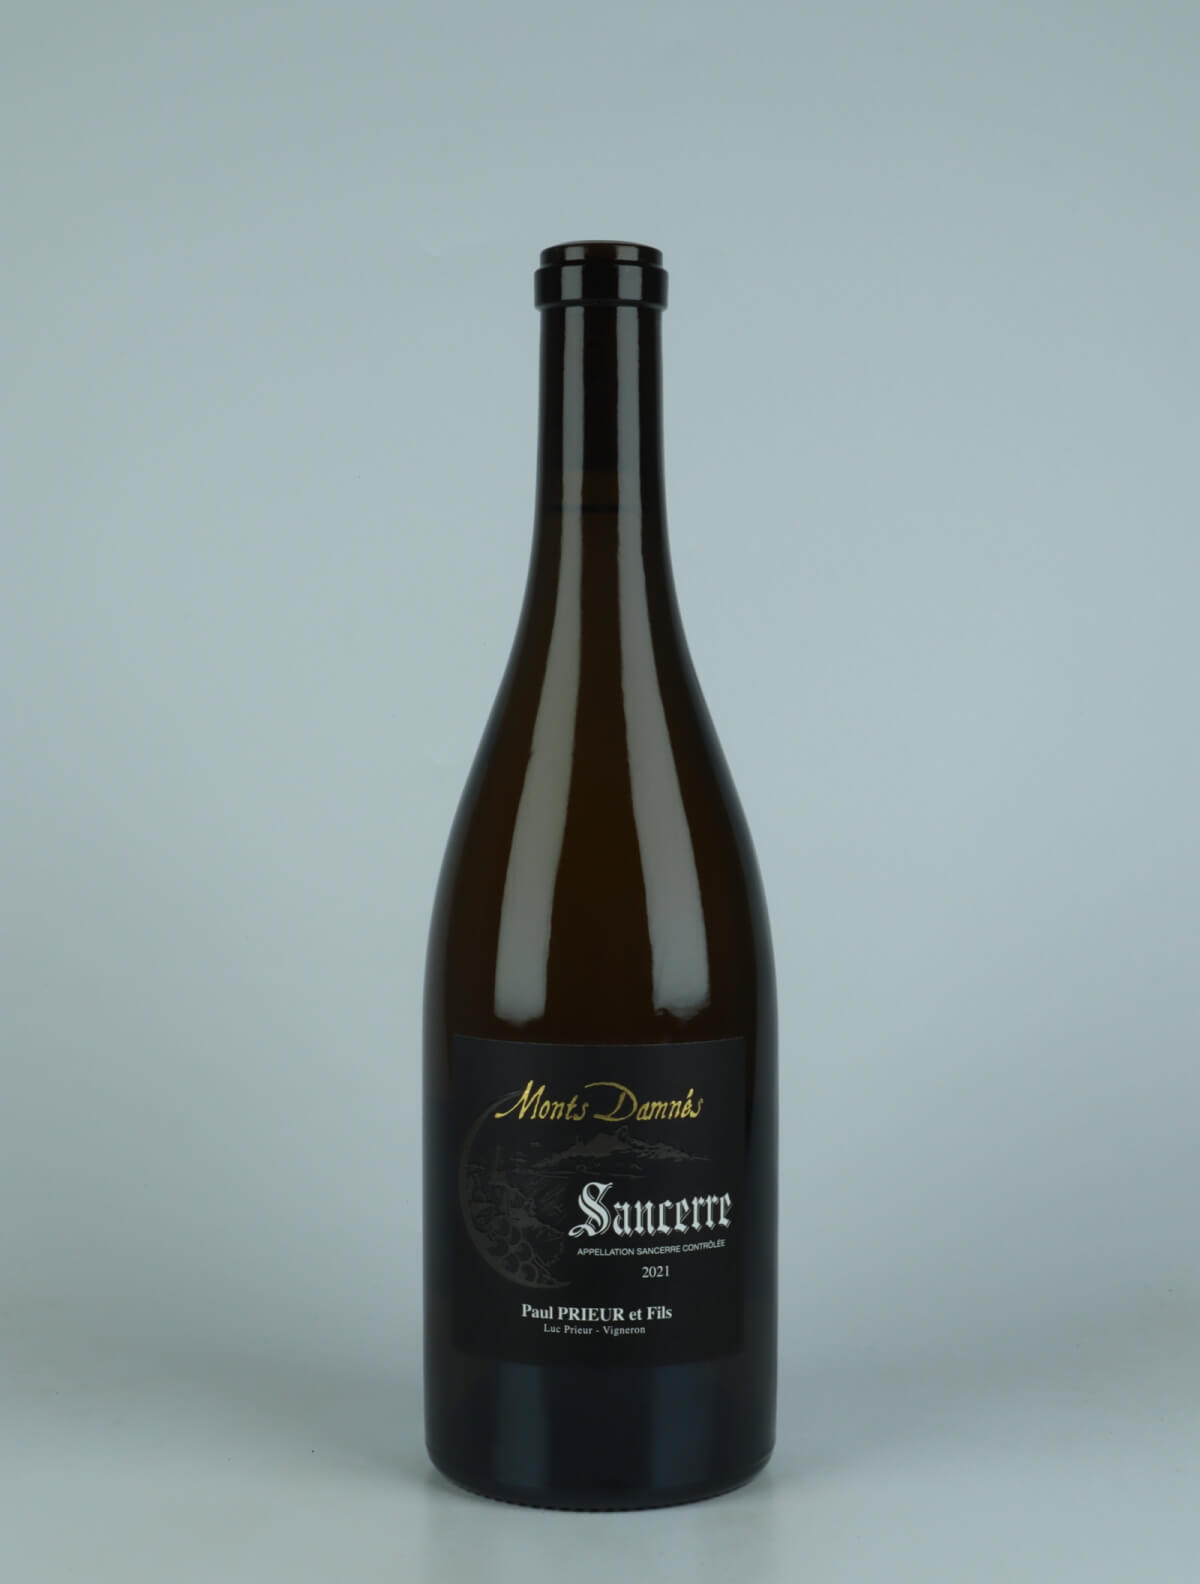 A bottle 2021 Sancerre - Les Monts Damnés White wine from Paul Prieur et Fils, Loire in France